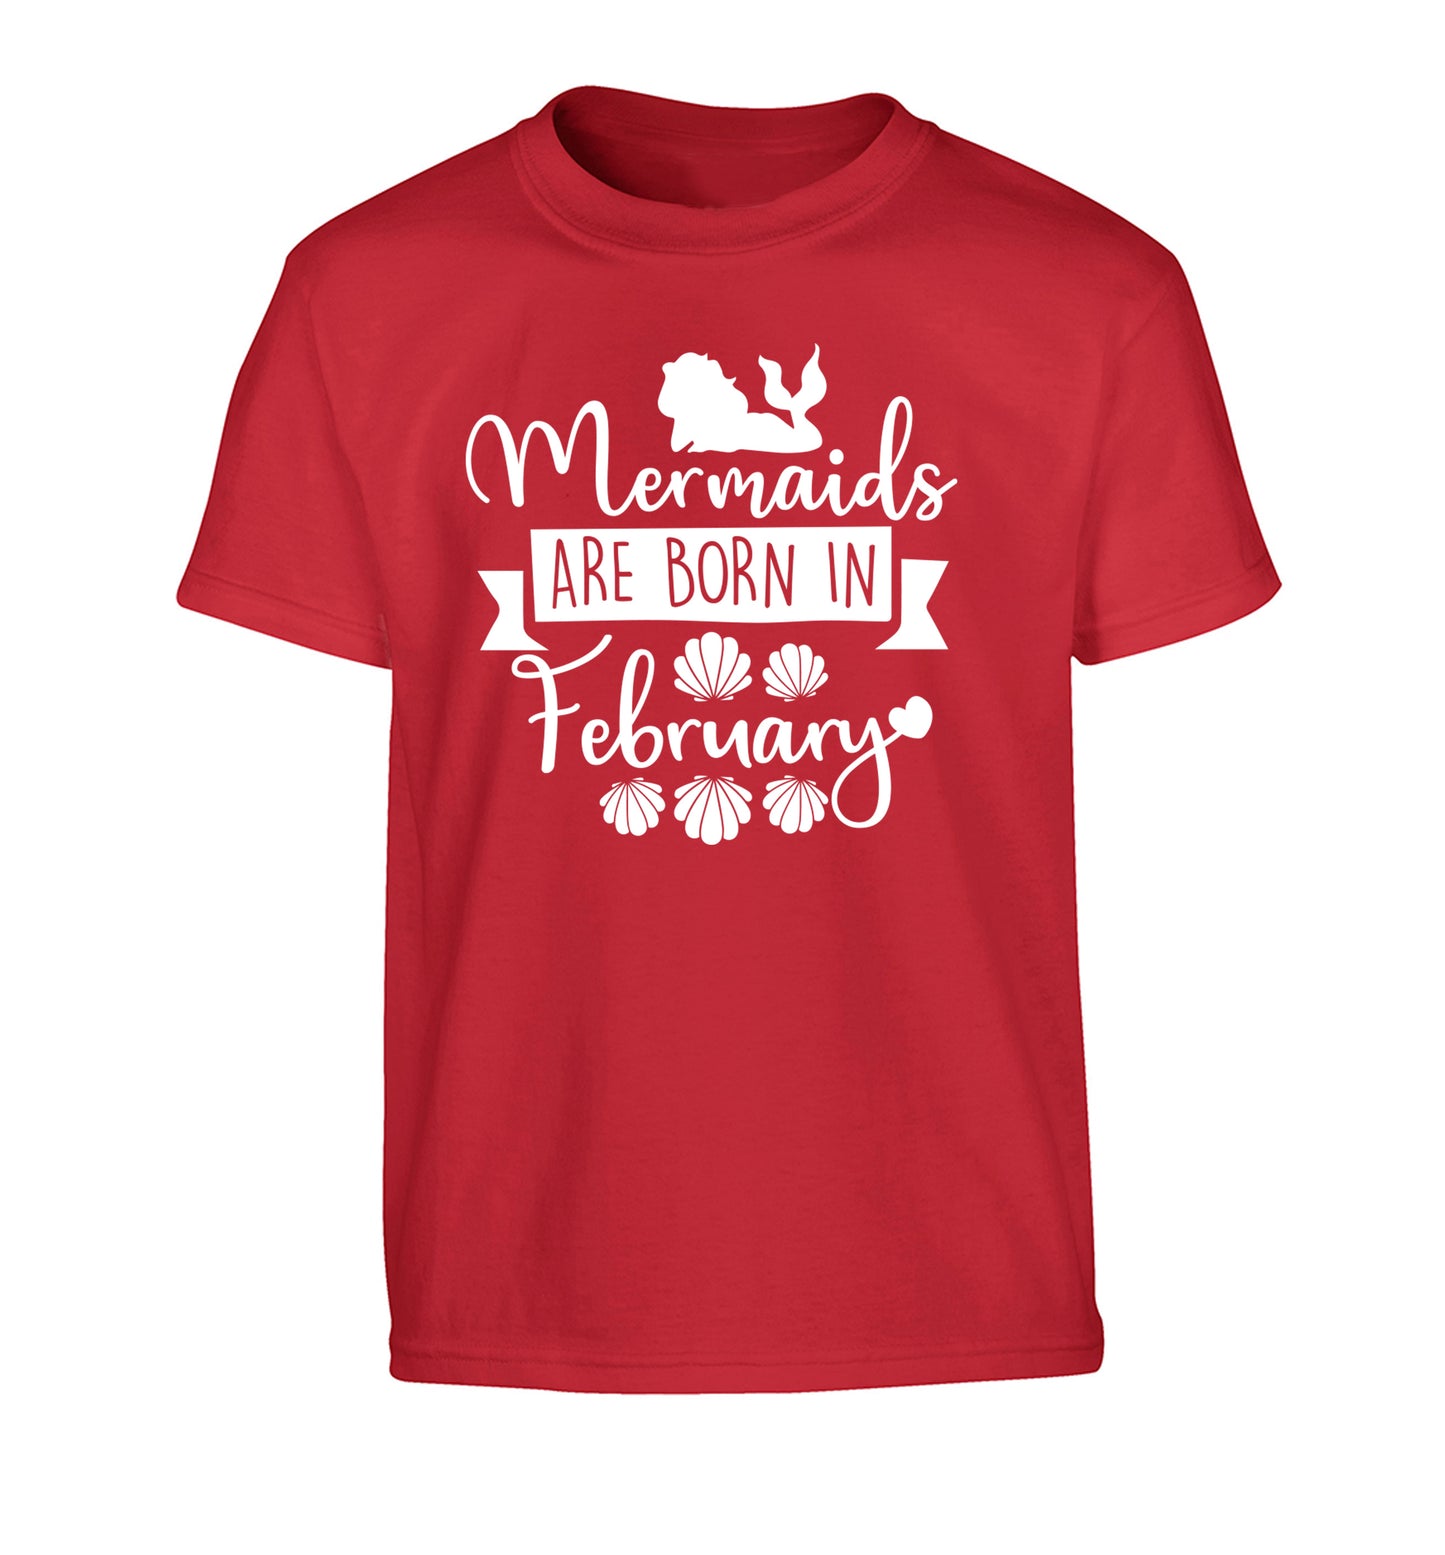 Mermaids are born in February Children's red Tshirt 12-13 Years